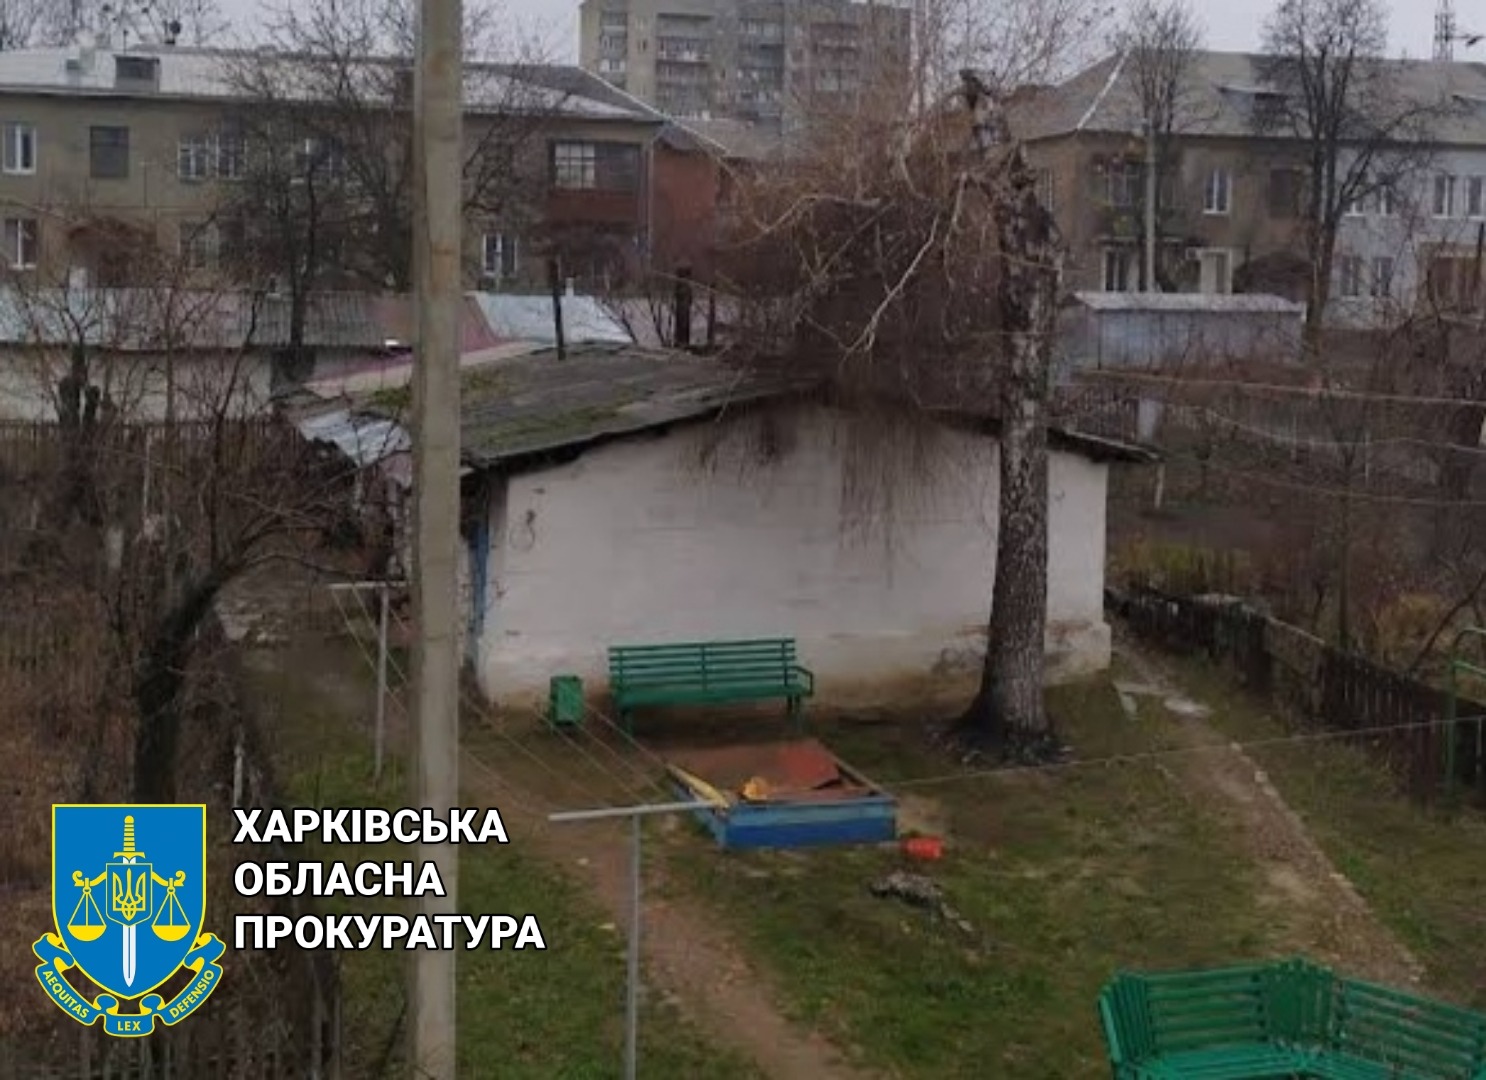 В Харькове продали квартиру за 300 тысяч гривен после смерти владельца